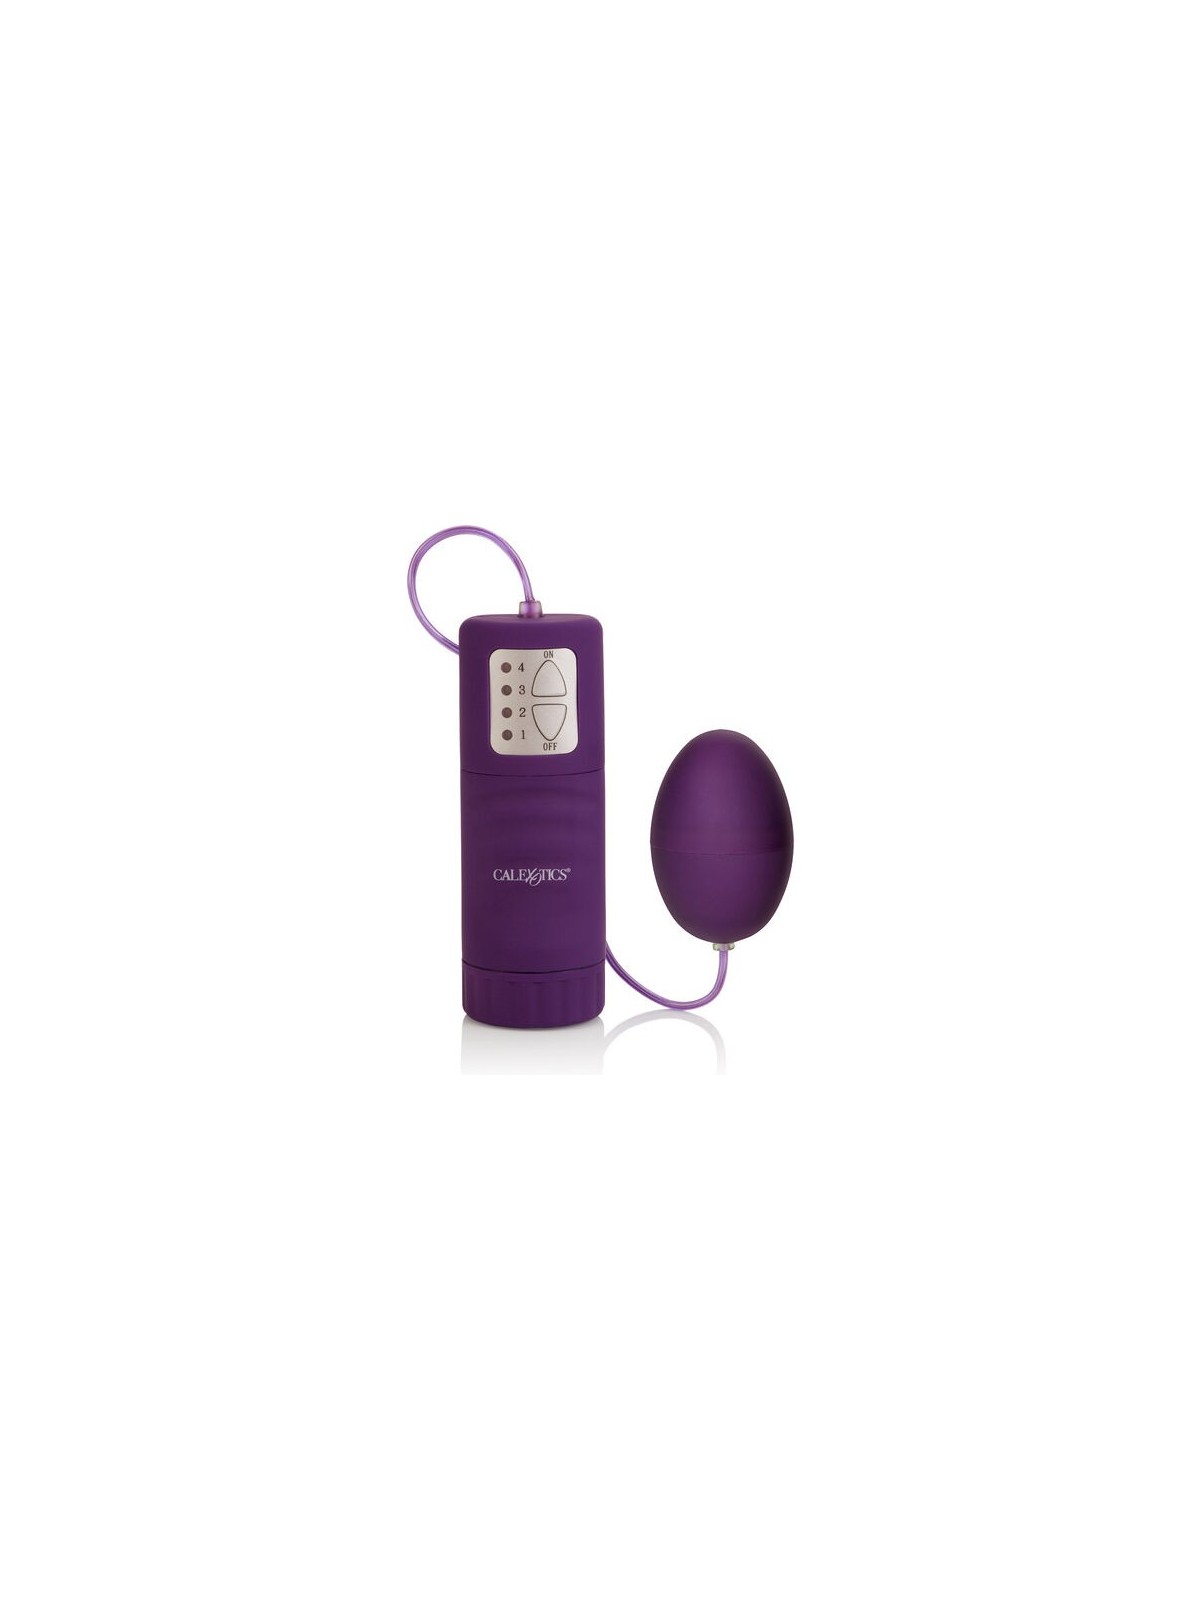 Calex Pocket Huevo Vibrador Morado 4V - Comprar Huevo vibrador California Exotics - Huevos vibradores (1)